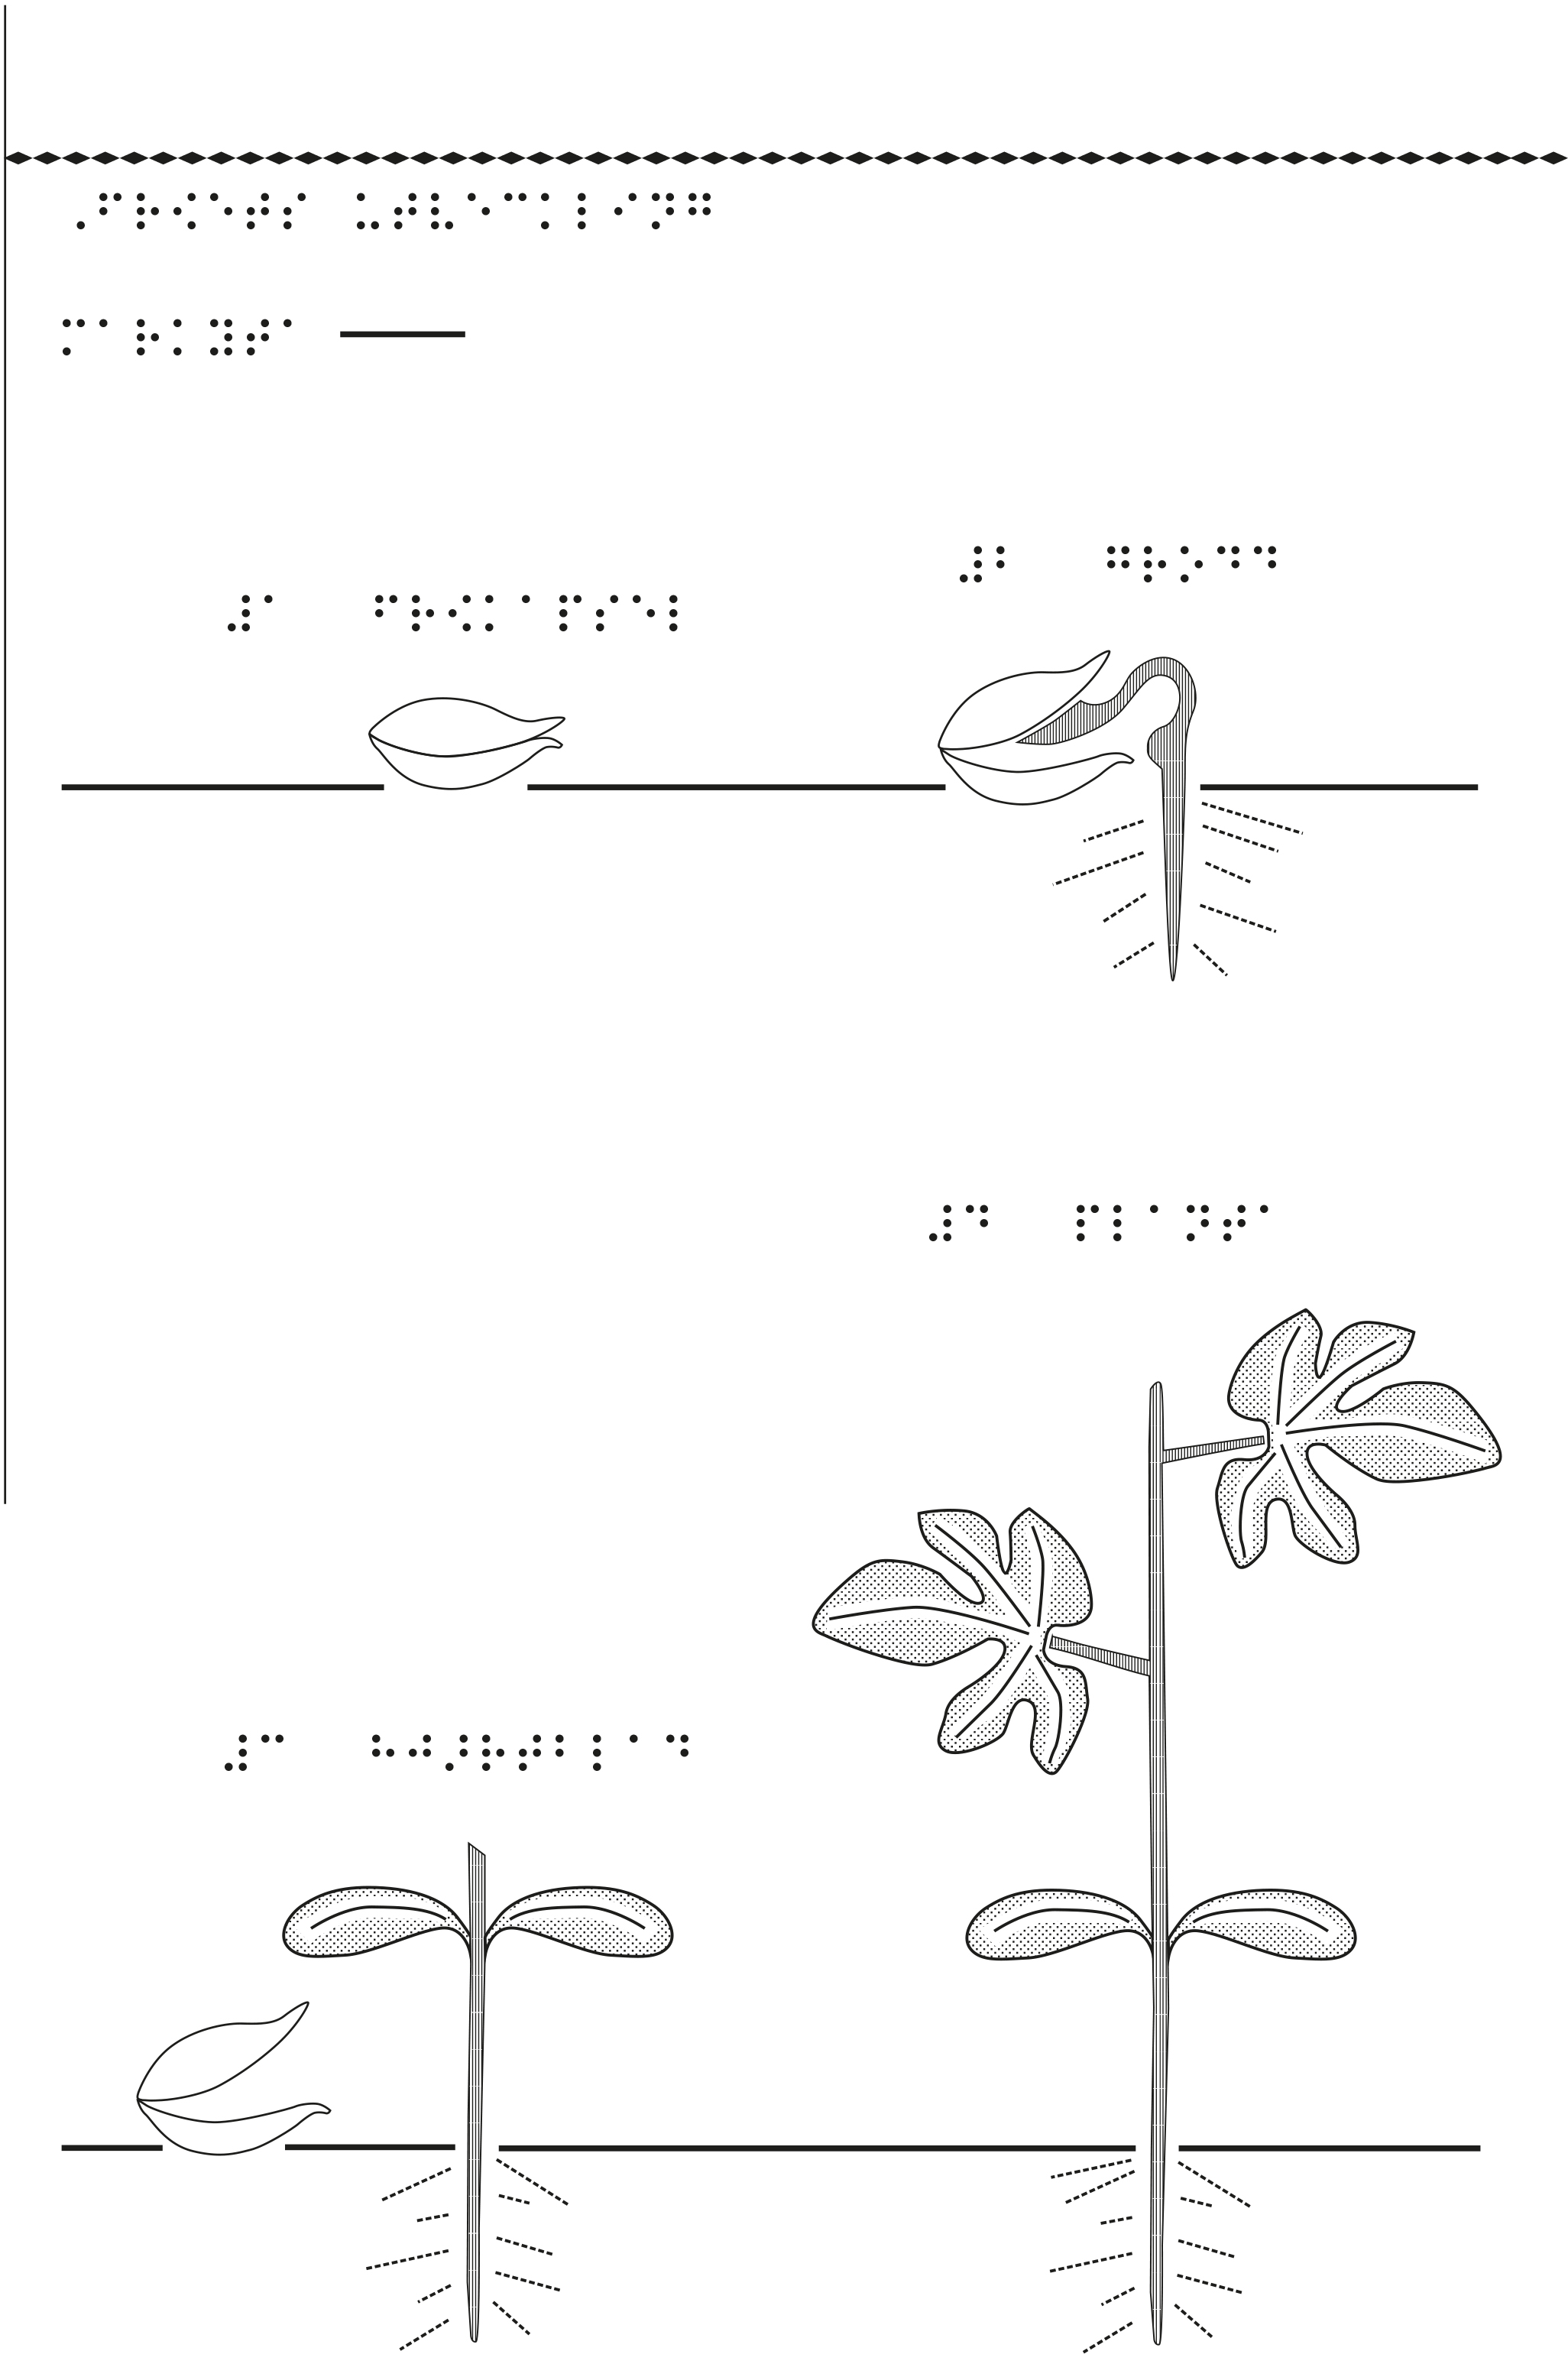 En bild som visar hur fröet utvecklas till en blomma.